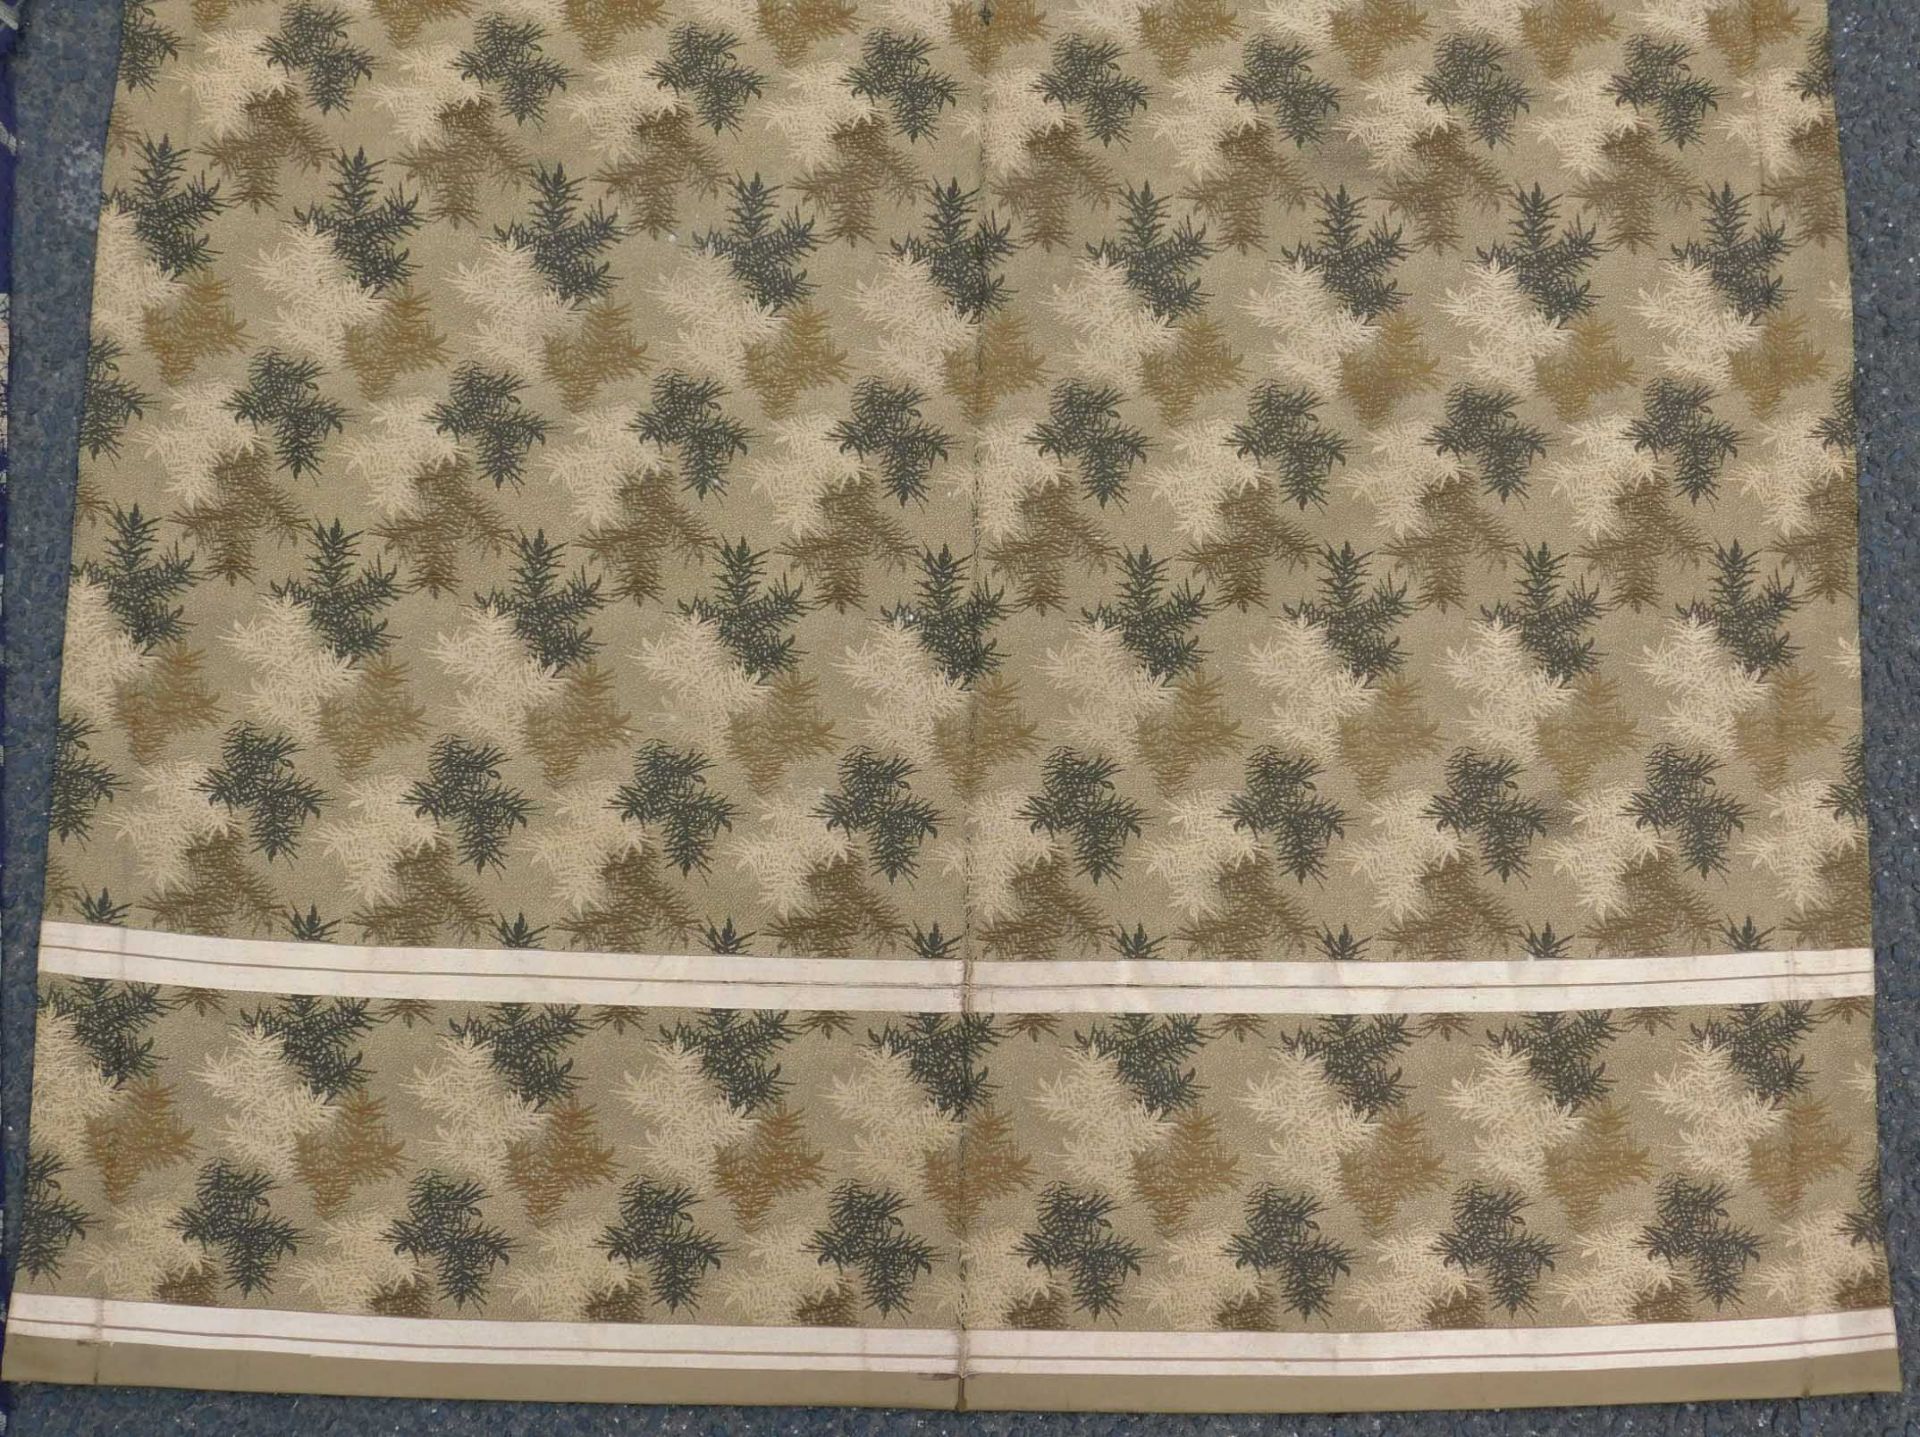 5 Obi Textilien Japan. Wohl alt, teils Seide, gewebt.Bis 205,5 cm x 65 cm.5 Obi Textiles Japan. - Image 8 of 12